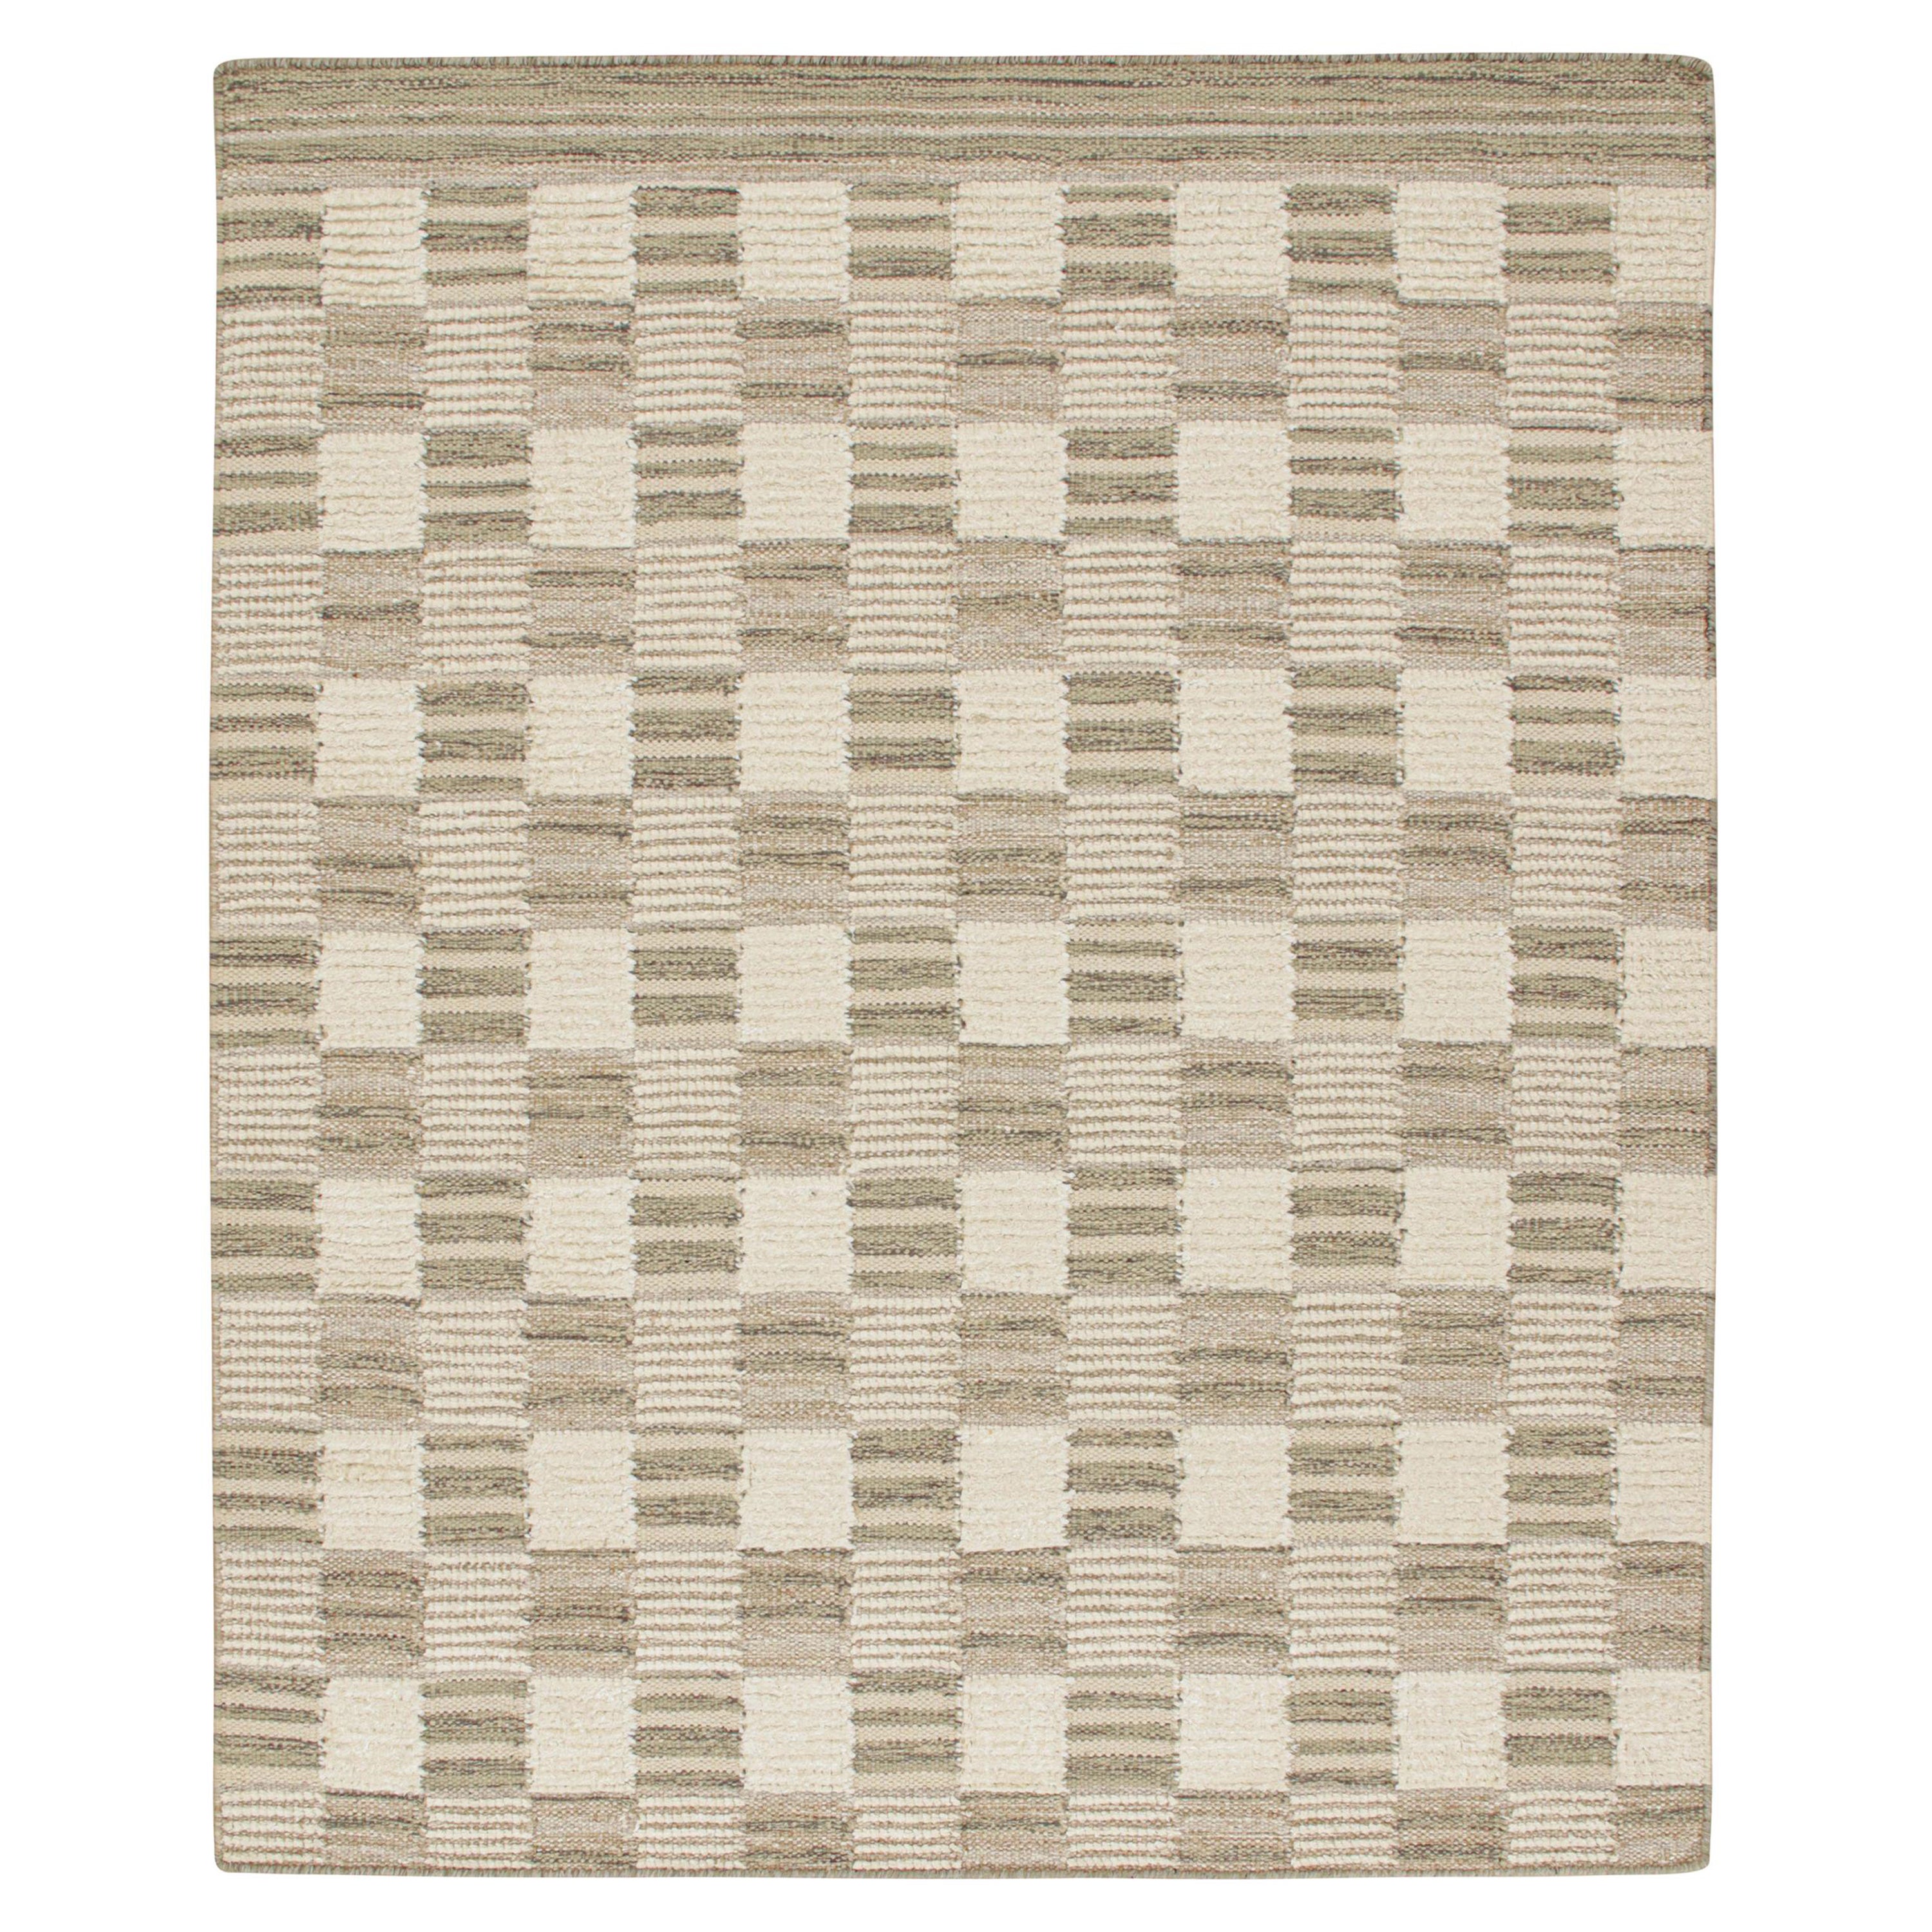 Rug & Kilim's skandinavischer Kilim in Beige-Braun & Weiß mit geometrischem Muster